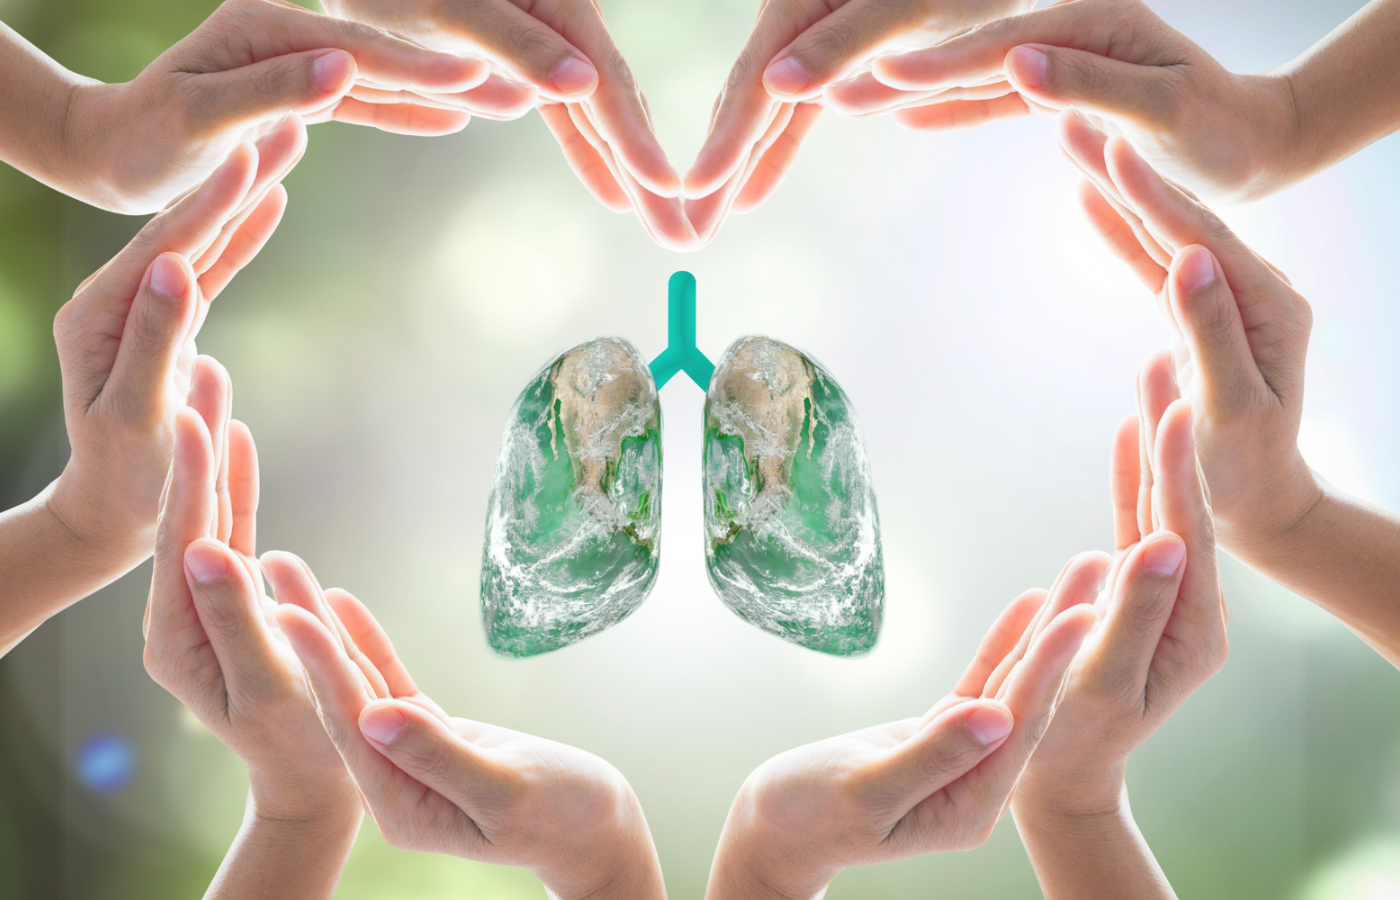 projekt bez tytulu 12 - Obchodzimy Światowy Dzień Rzucania Palenia i Przewlekłej Obturacyjnej Choroby Płuc (POChP) – skorzystaj z darmowej konsultacji ze specjalistą